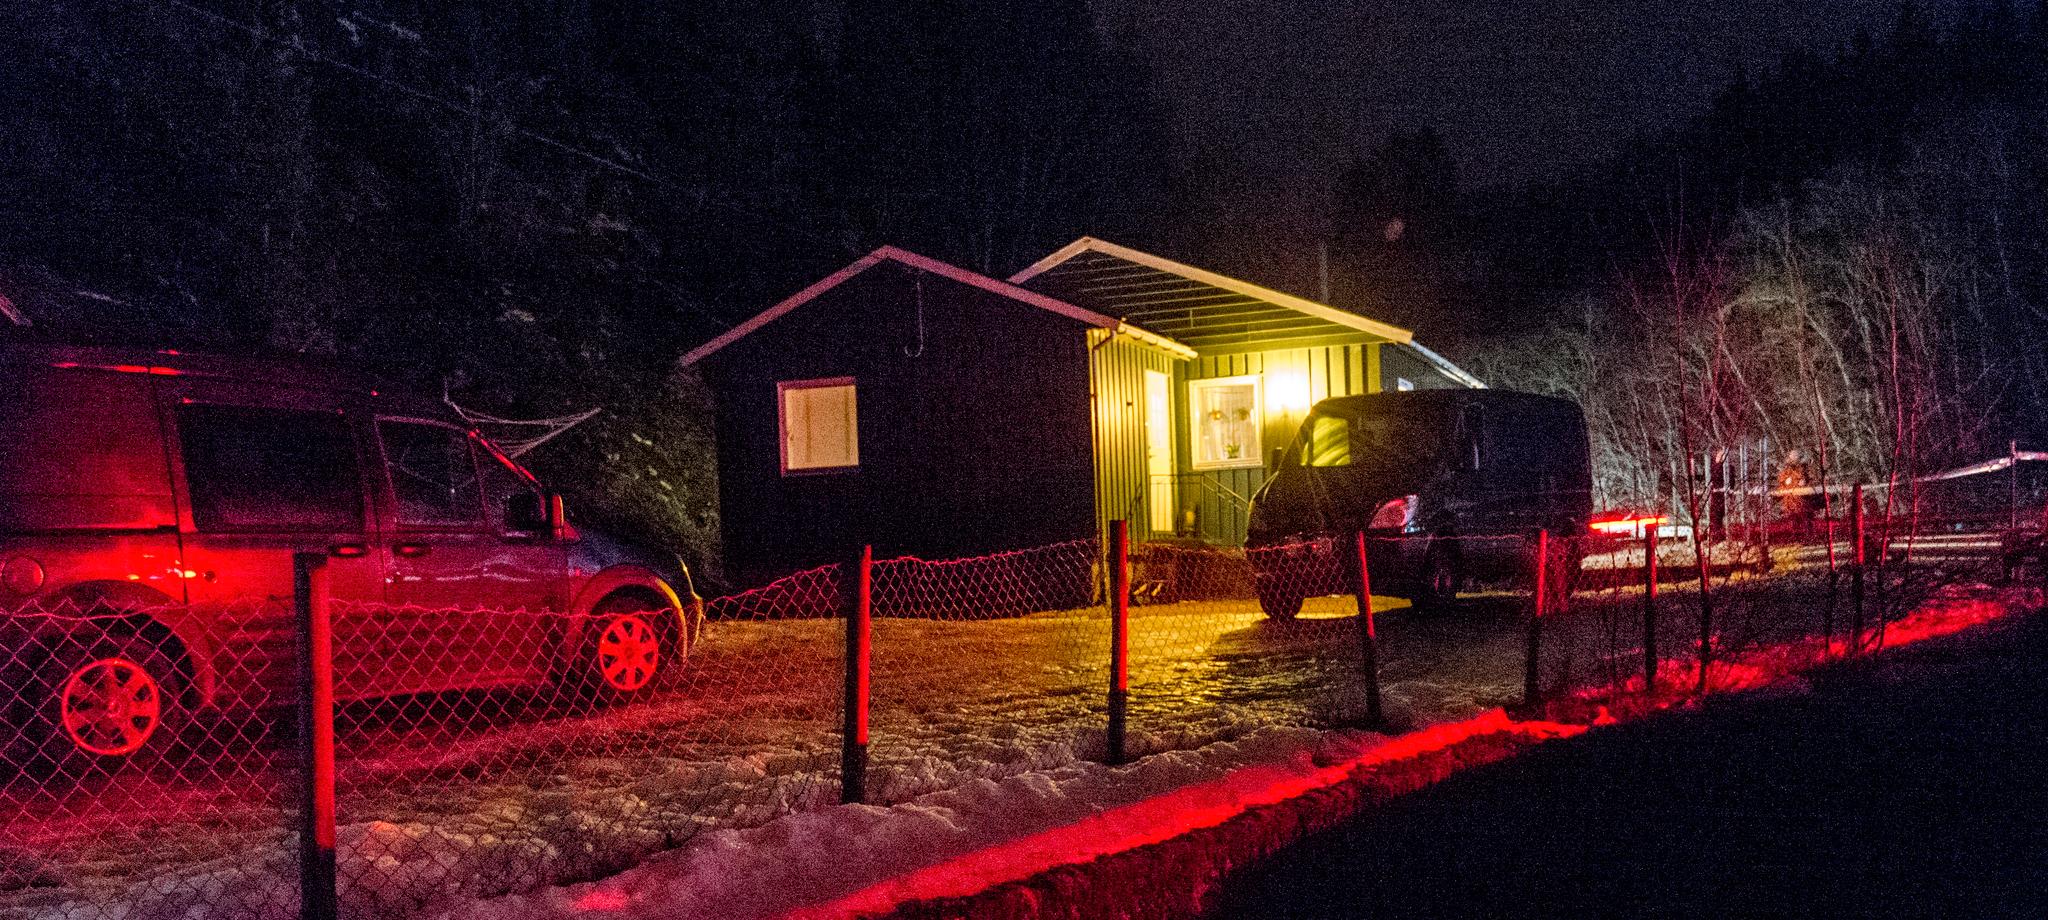 En mann i slutten av 30-årene ble 25. januar funnet død i dette huset på Ler i Melhus kommune i Sør-Trøndelag. Foto: Ned Alley / NTB scanpix